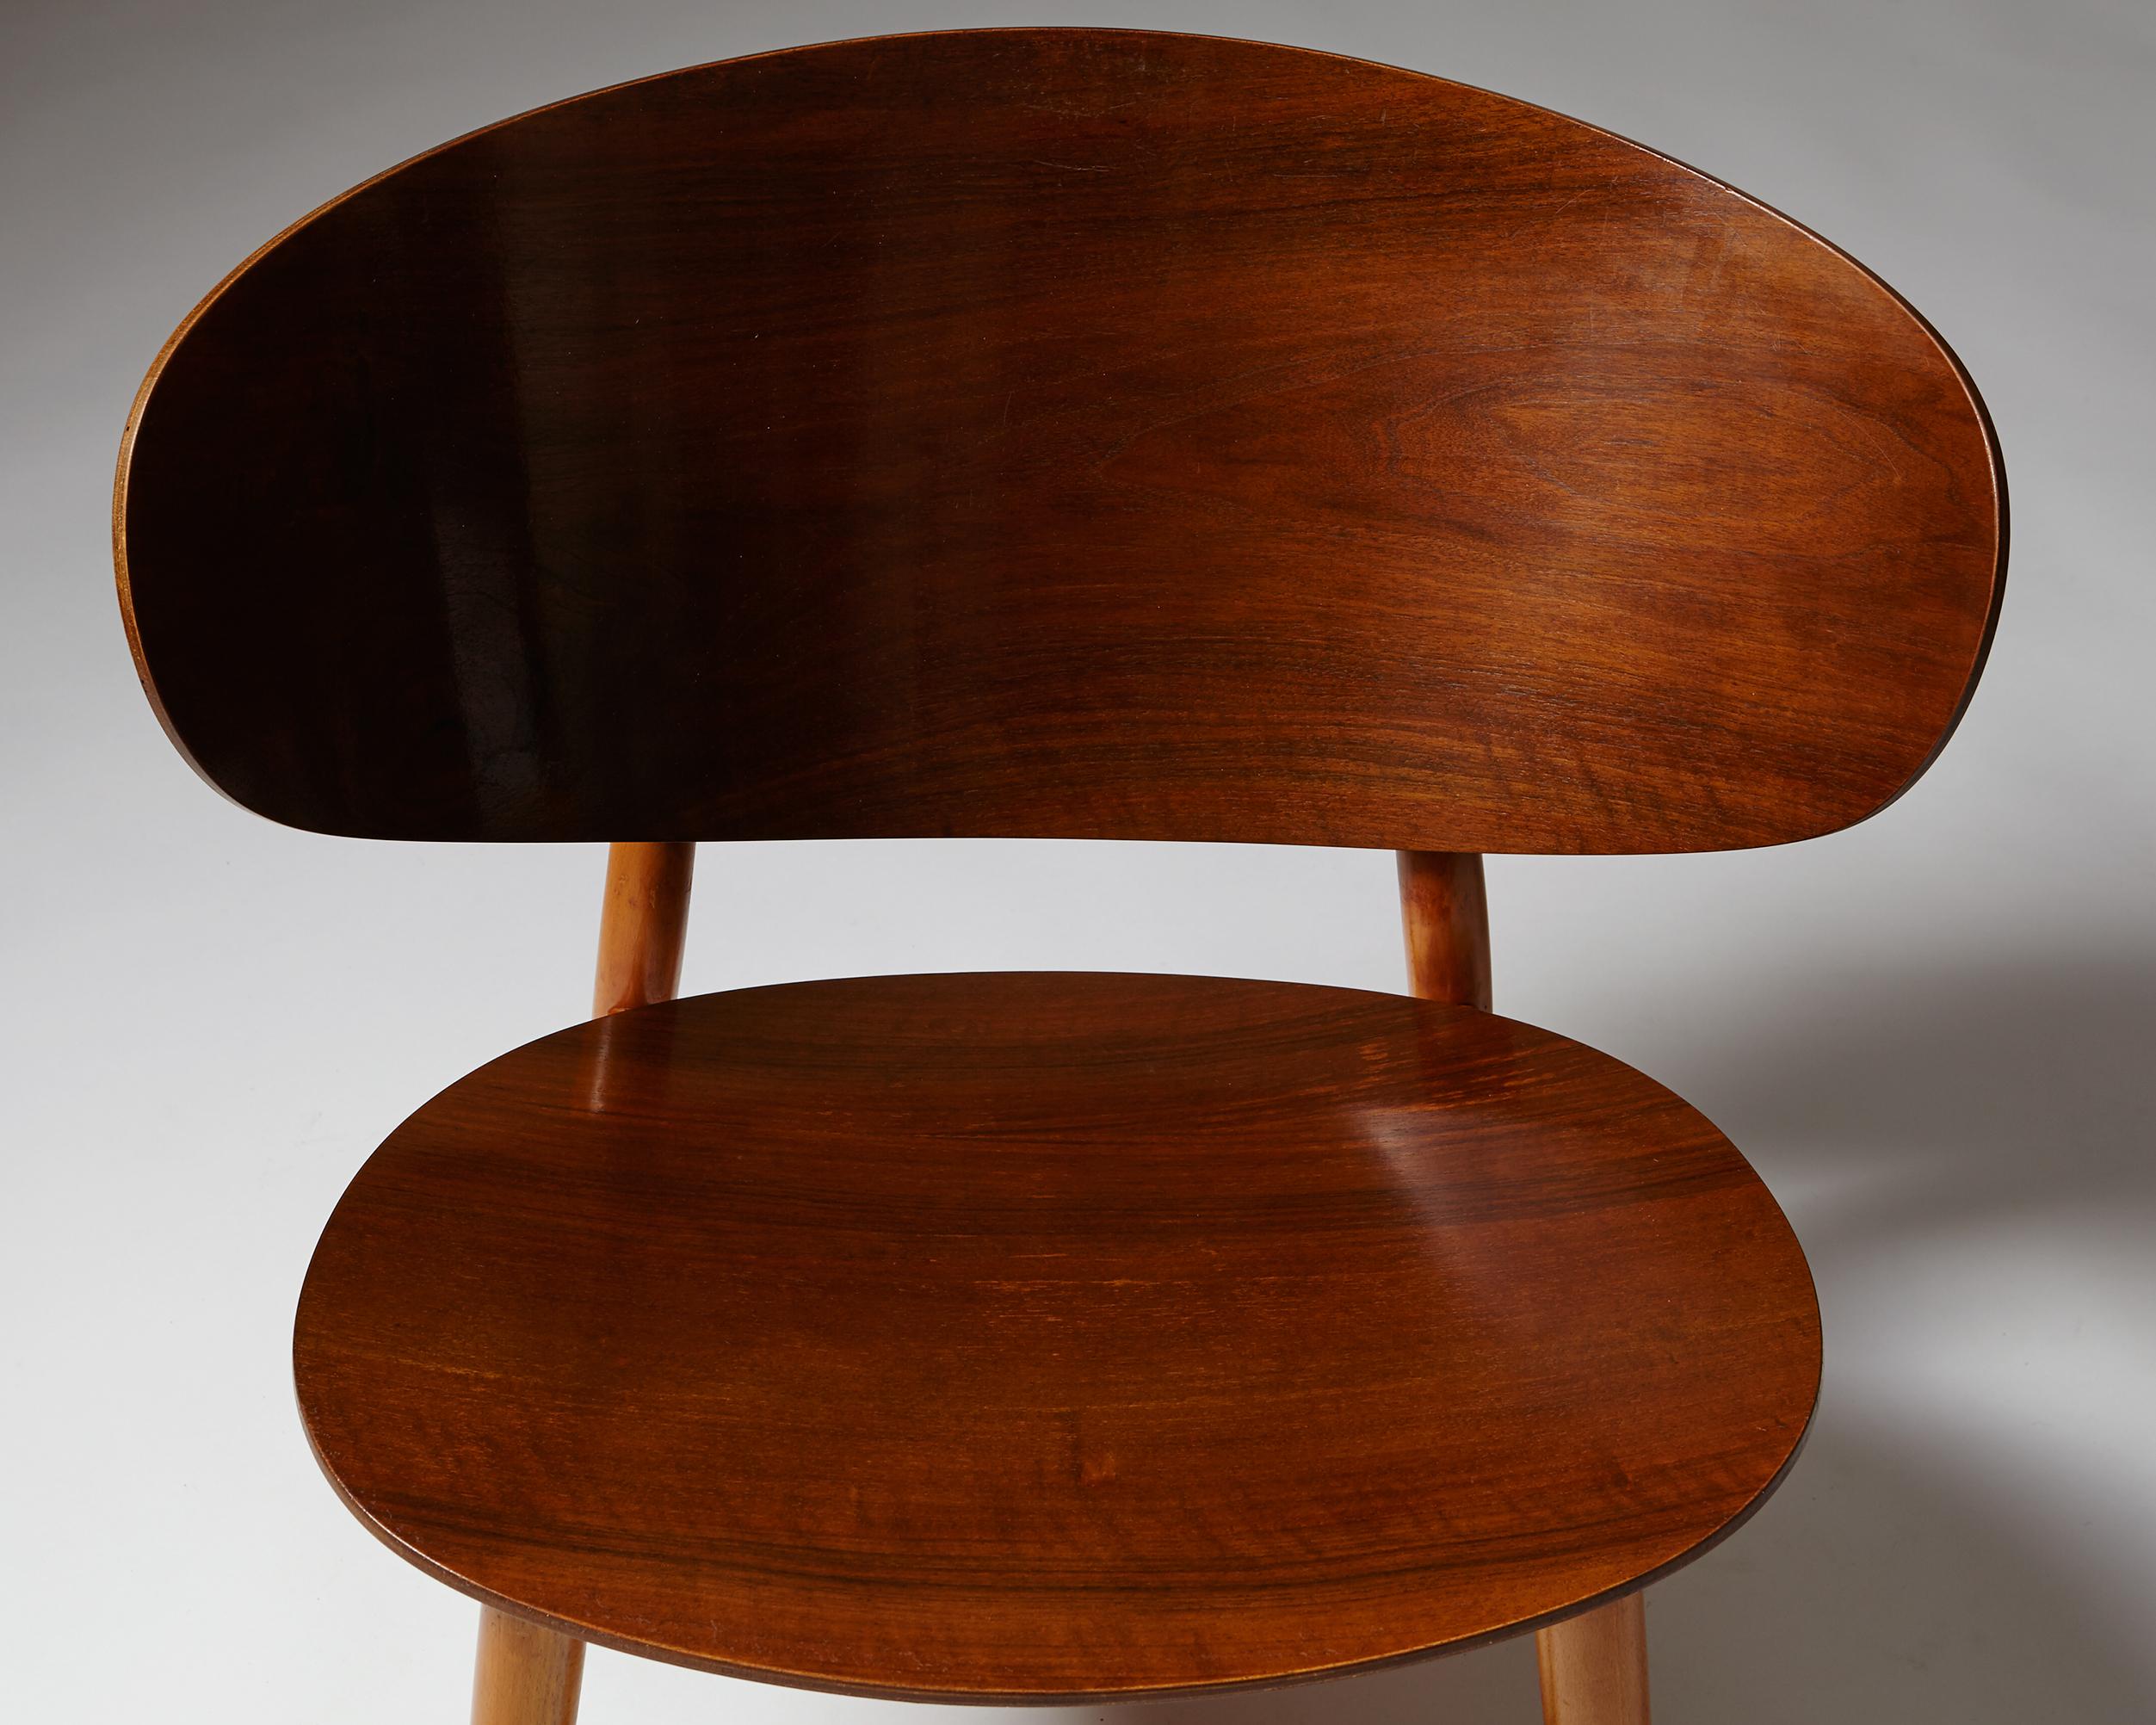 Scandinavian Modern Shell Chairs FH-1936 Designed by Hans Wegner for Fritz Hansen, Denmark, 1948